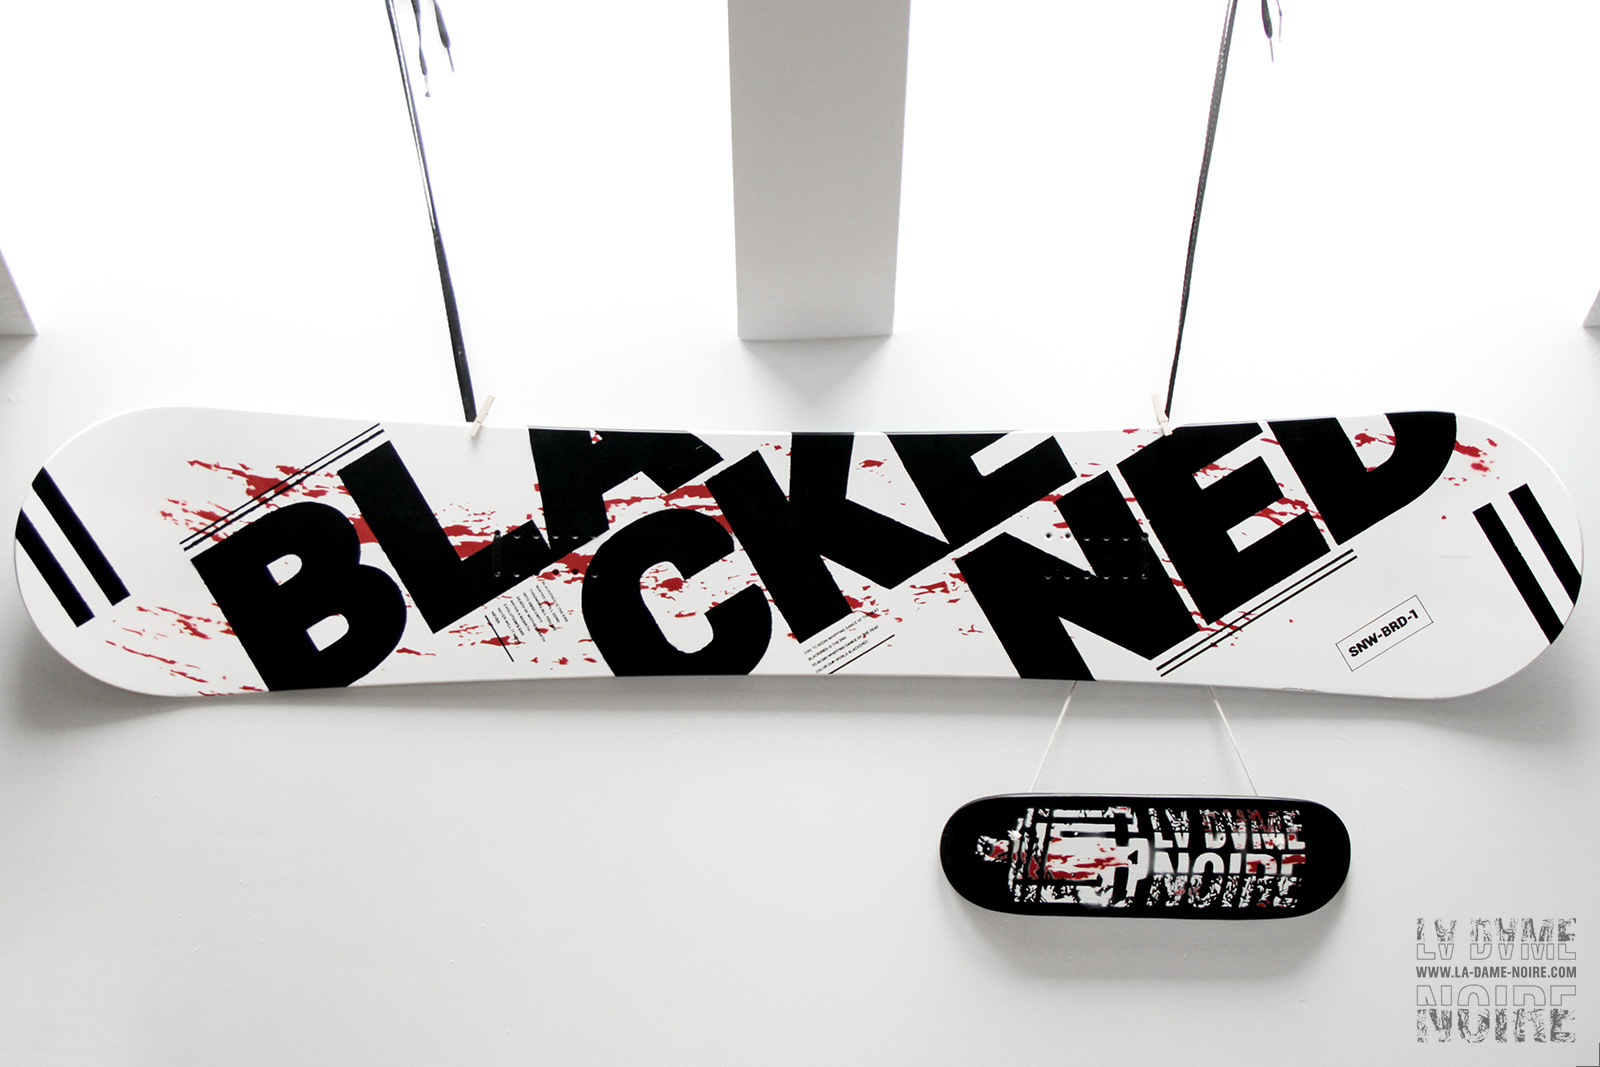 Vue gloable du snowboard et du skateboard peints en noir, blanc et rouge